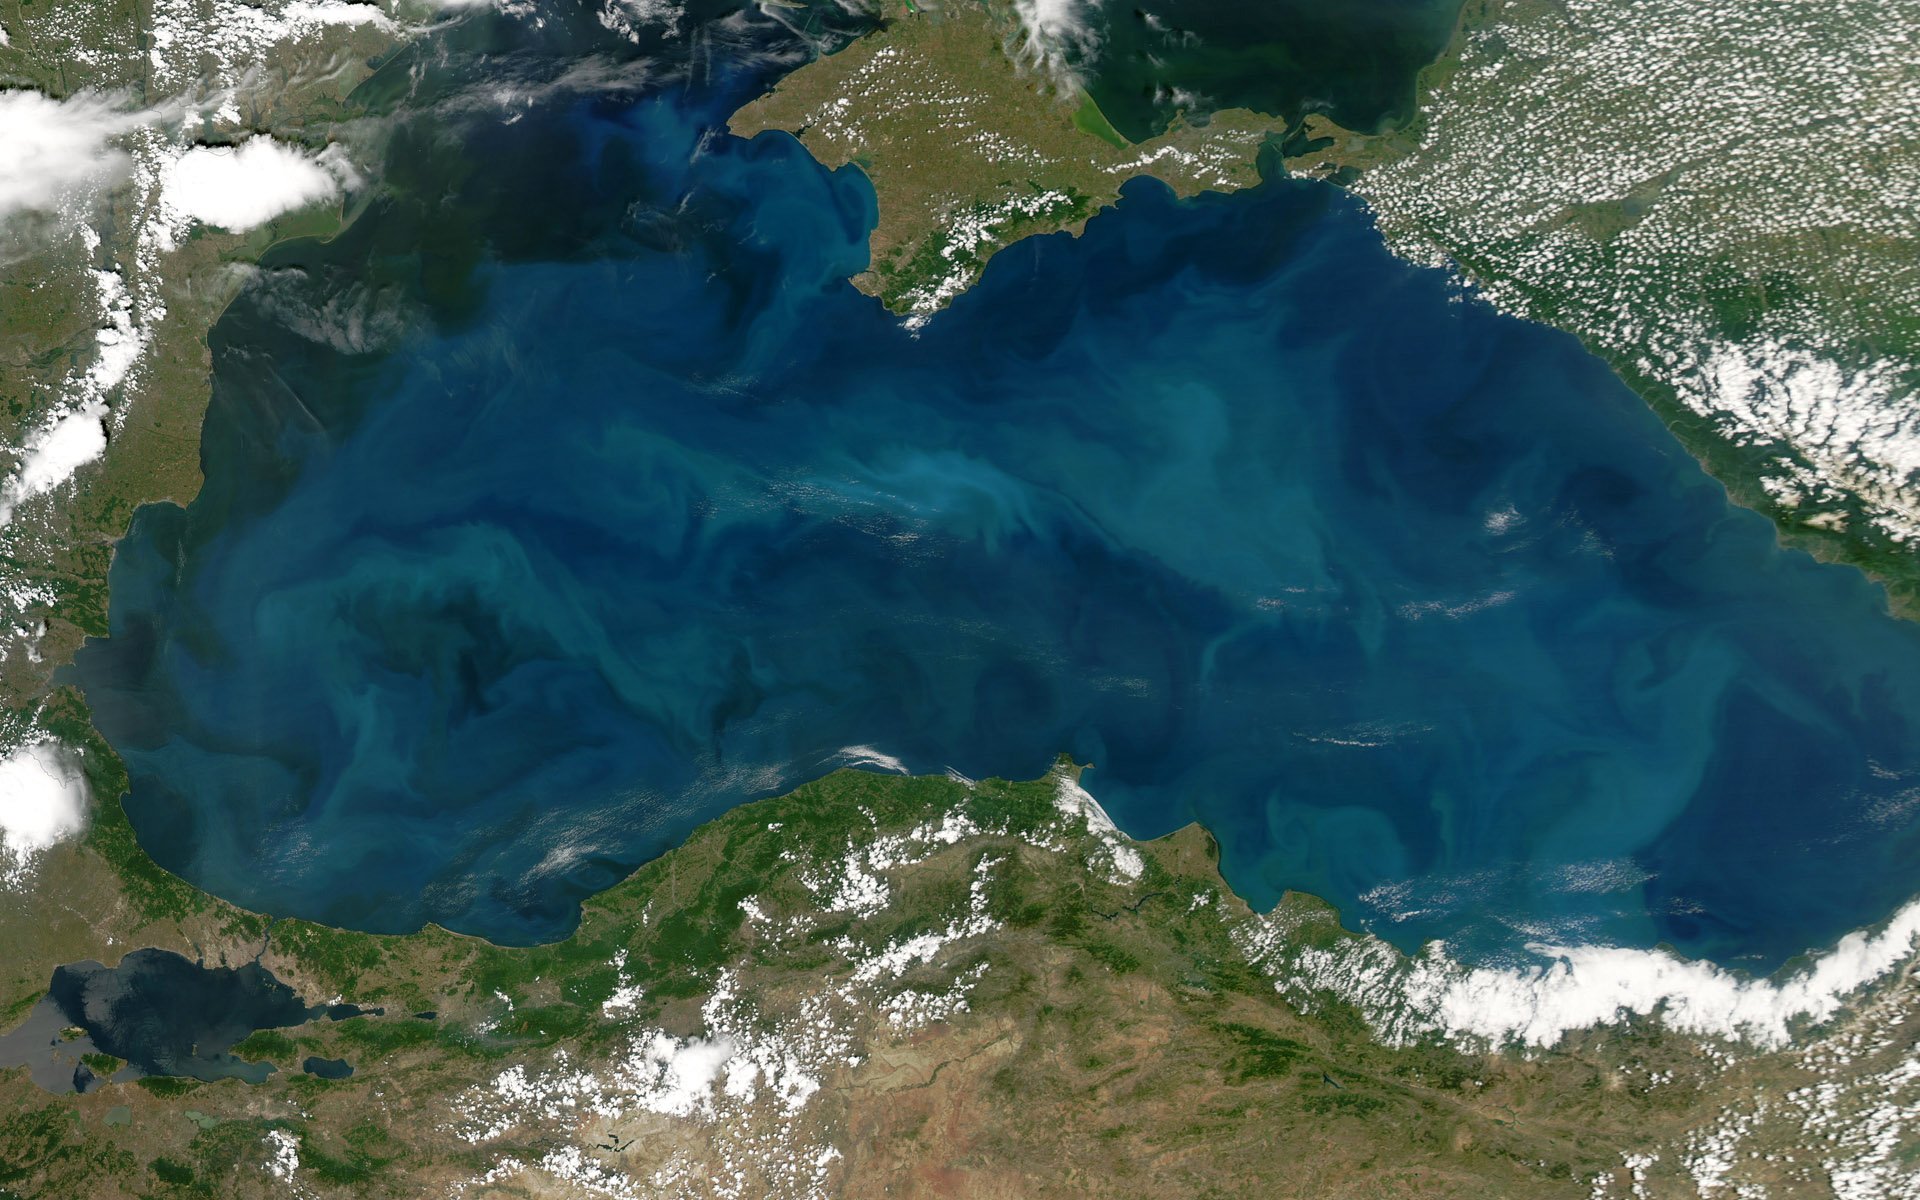 Черное море днем